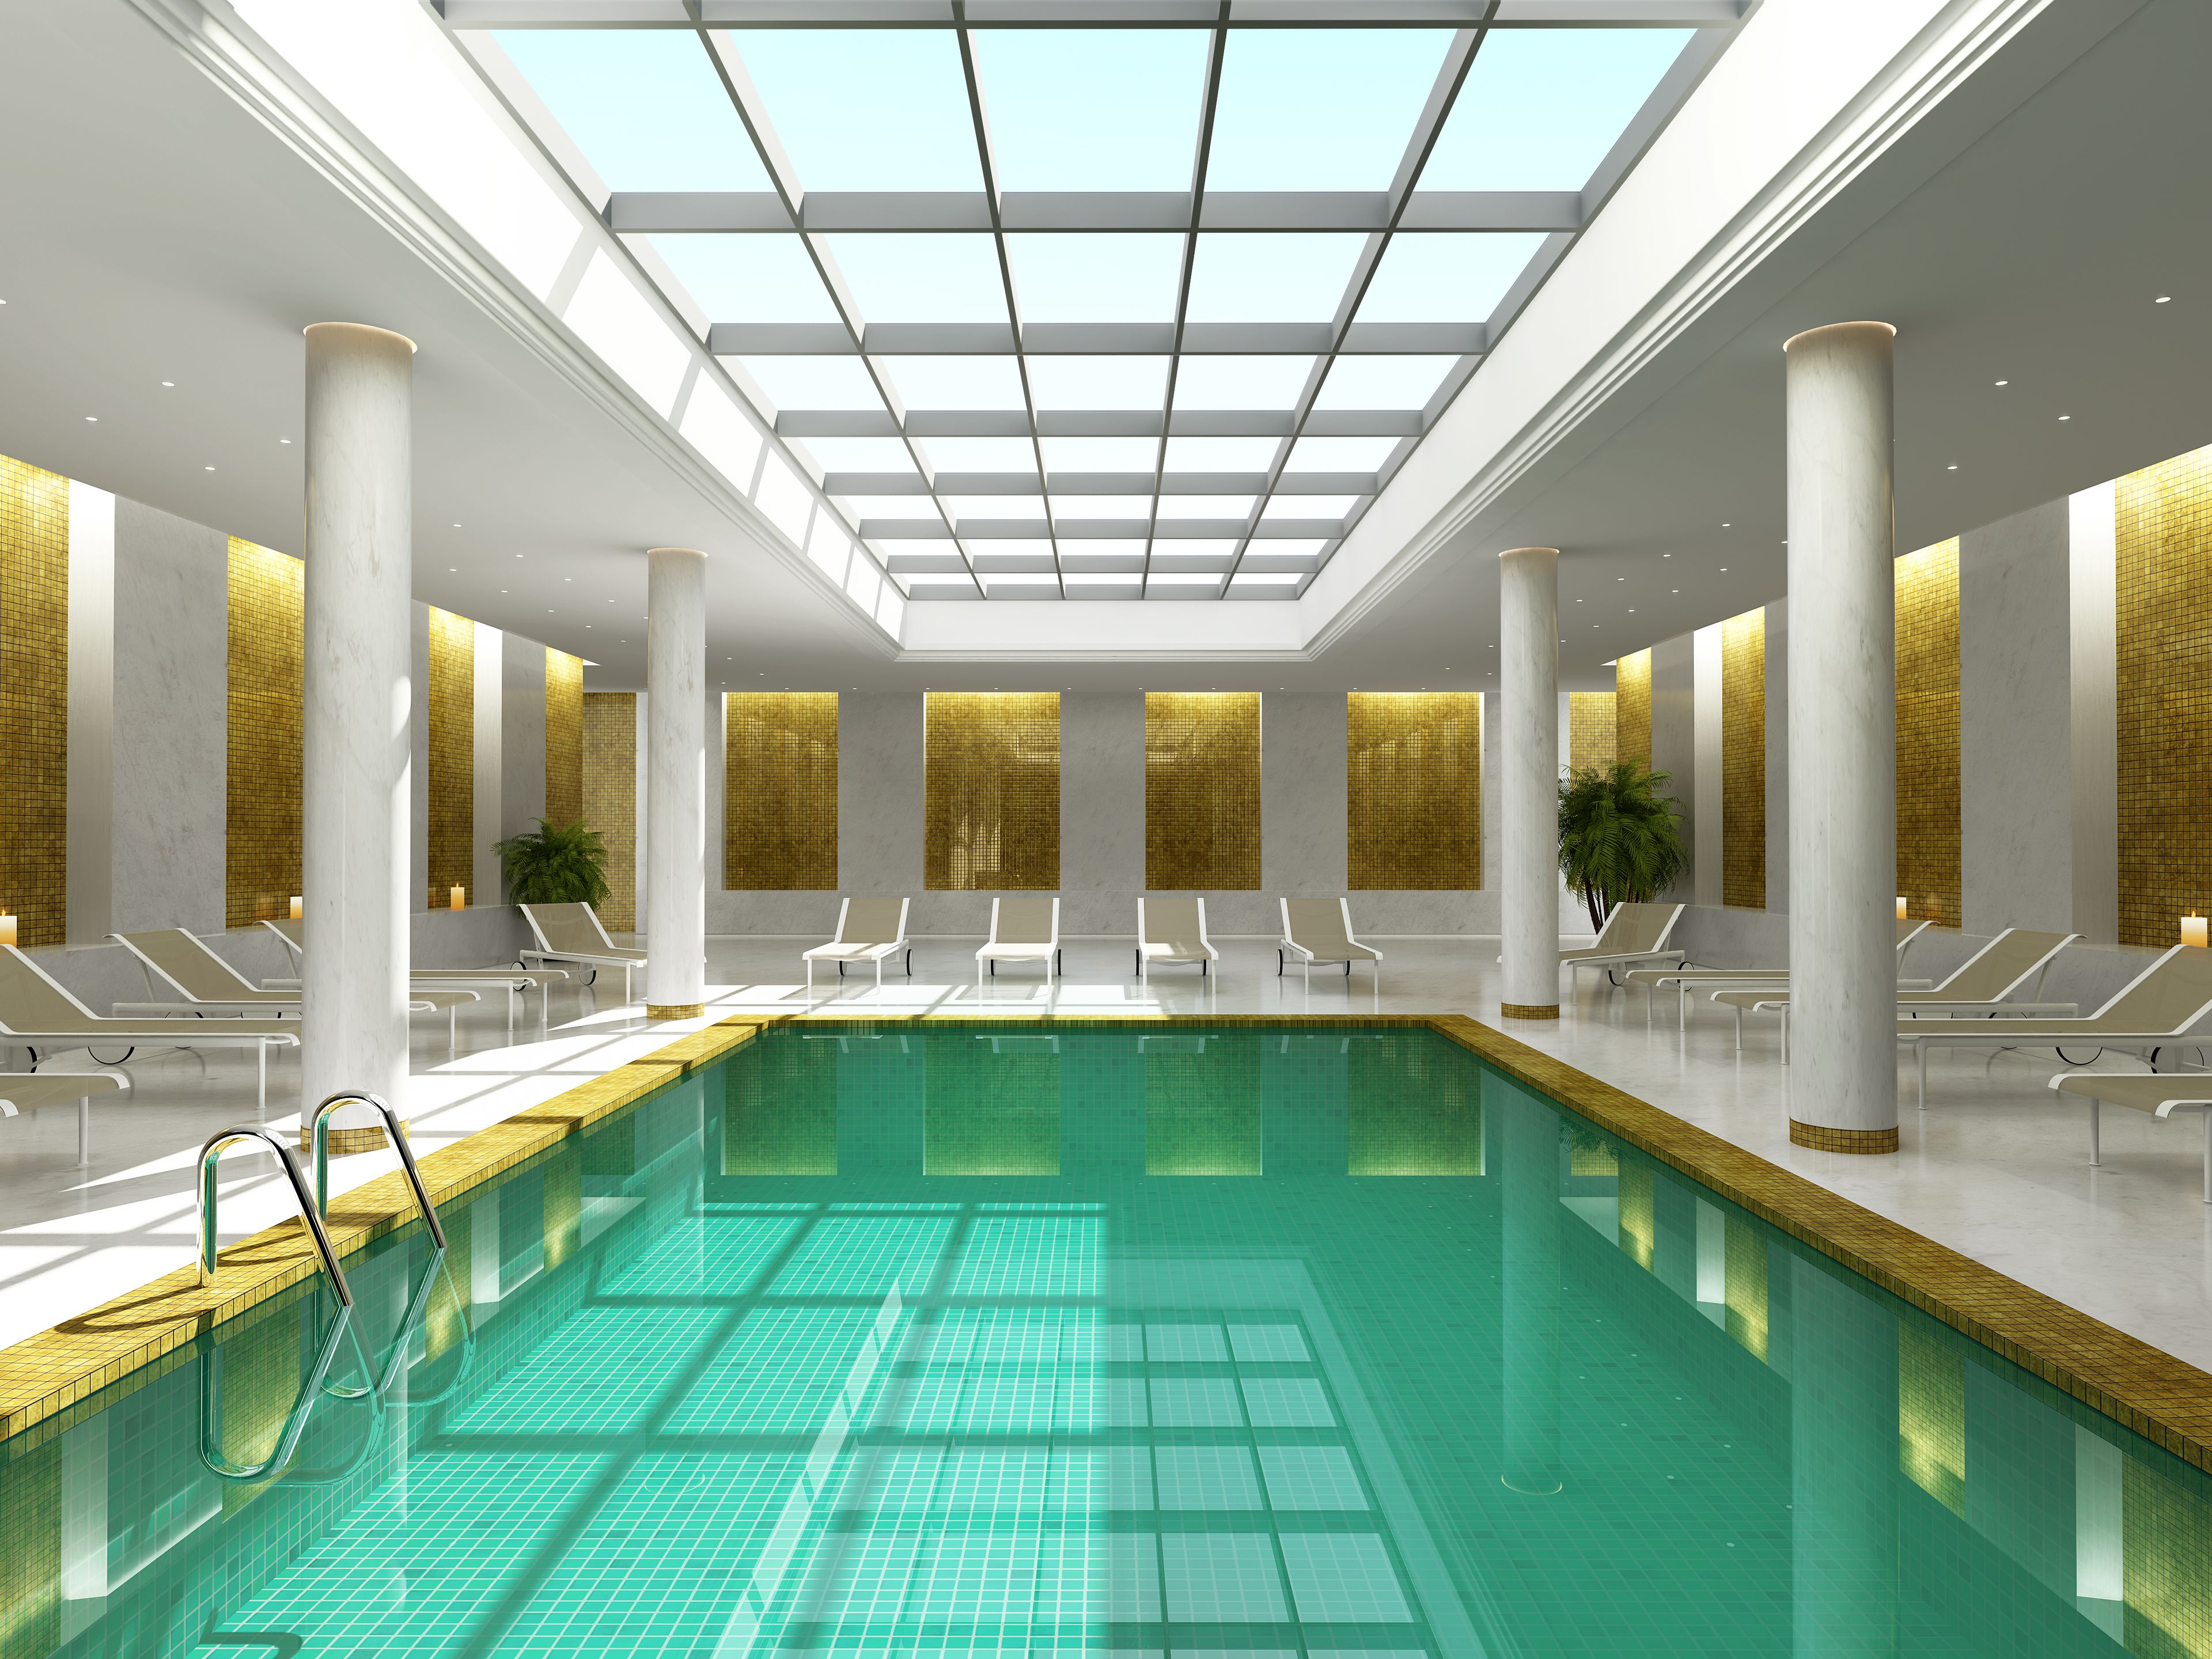 Pool im Stil von einem römischen Bad